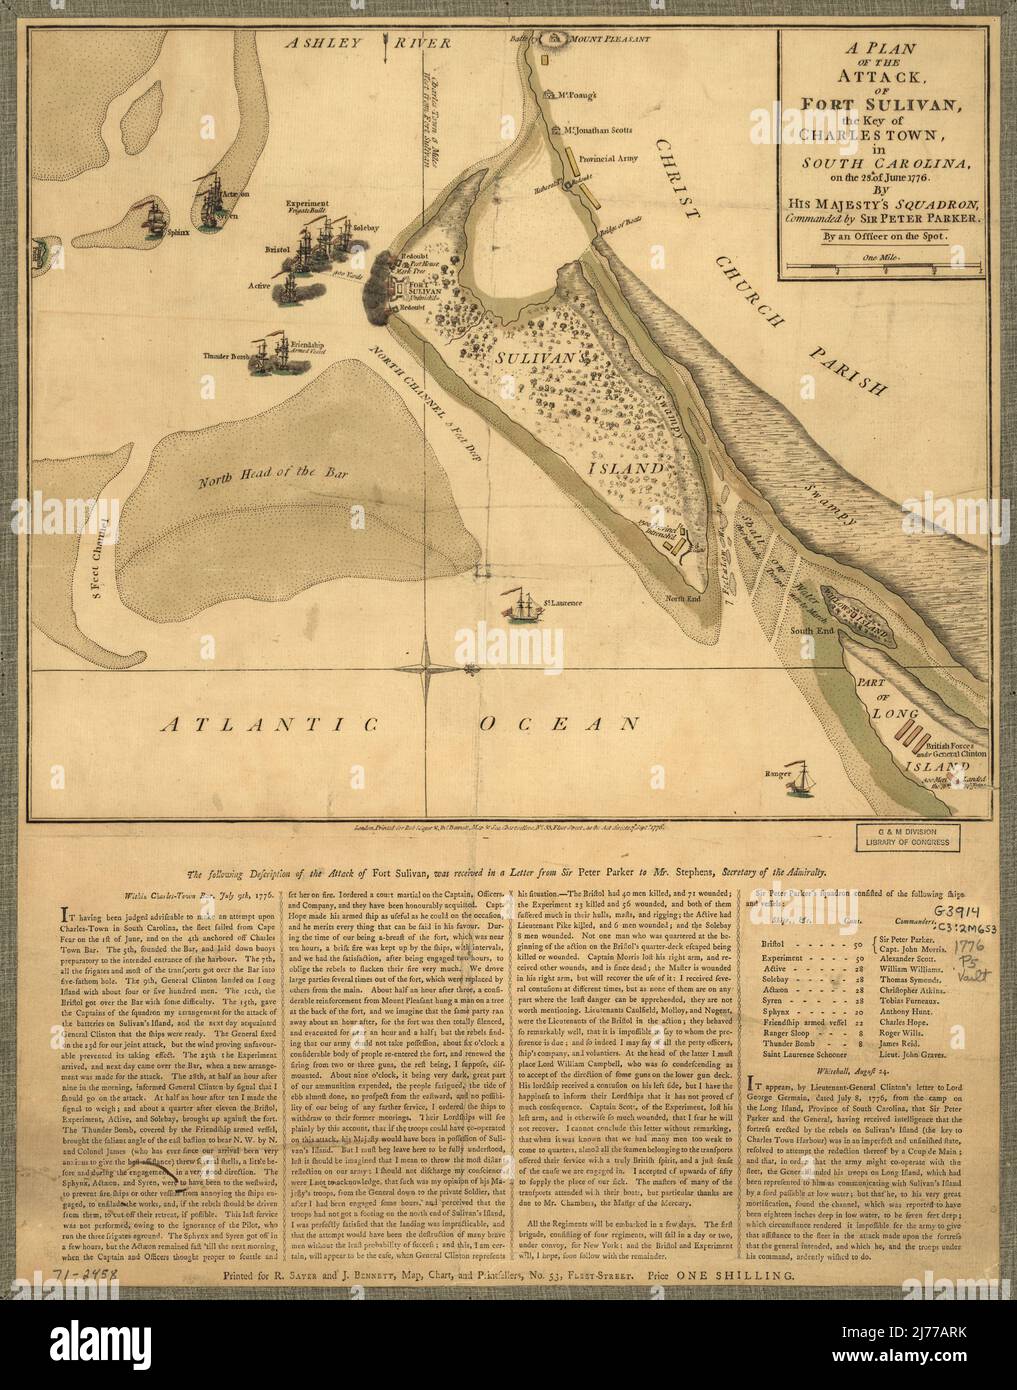 Un piano dell'attacco di Fort Sulivan, la chiave di Charlestown, in Carolina del Sud, il 28th. Di giugno 1776. Dallo squadrone di sua Maestà, comandato da Sir Peter Parker. Da un ufficiale sulla sp 4055 Foto Stock